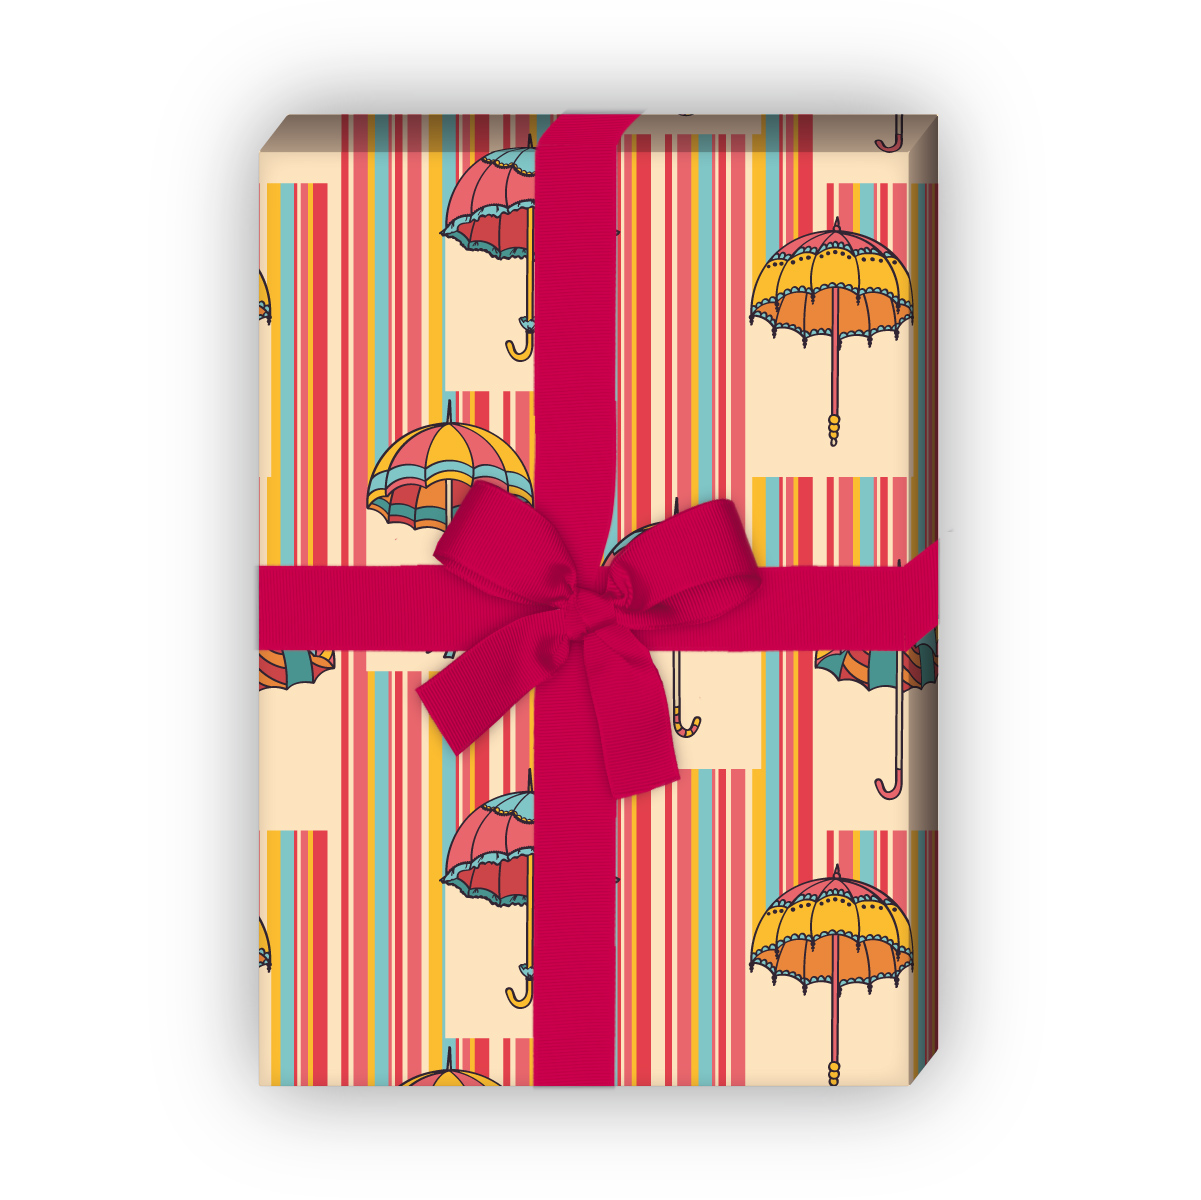 Kartenkaufrausch: Lustiges Regen Streifen Geschenkpapier aus unserer Herbst Papeterie in gelb